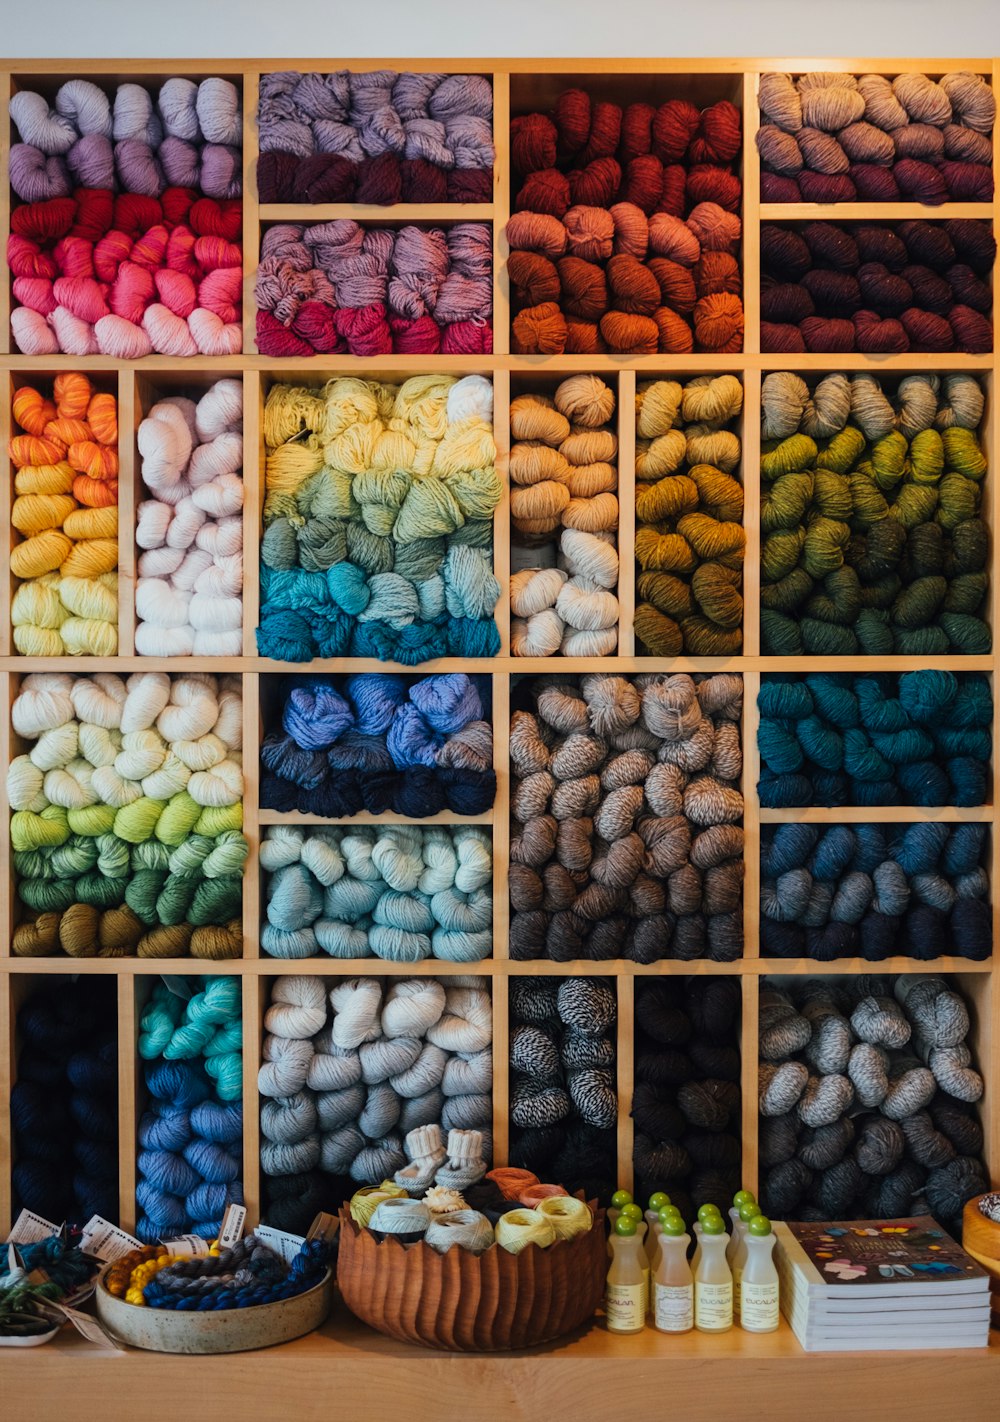 têxteis de cores variadas